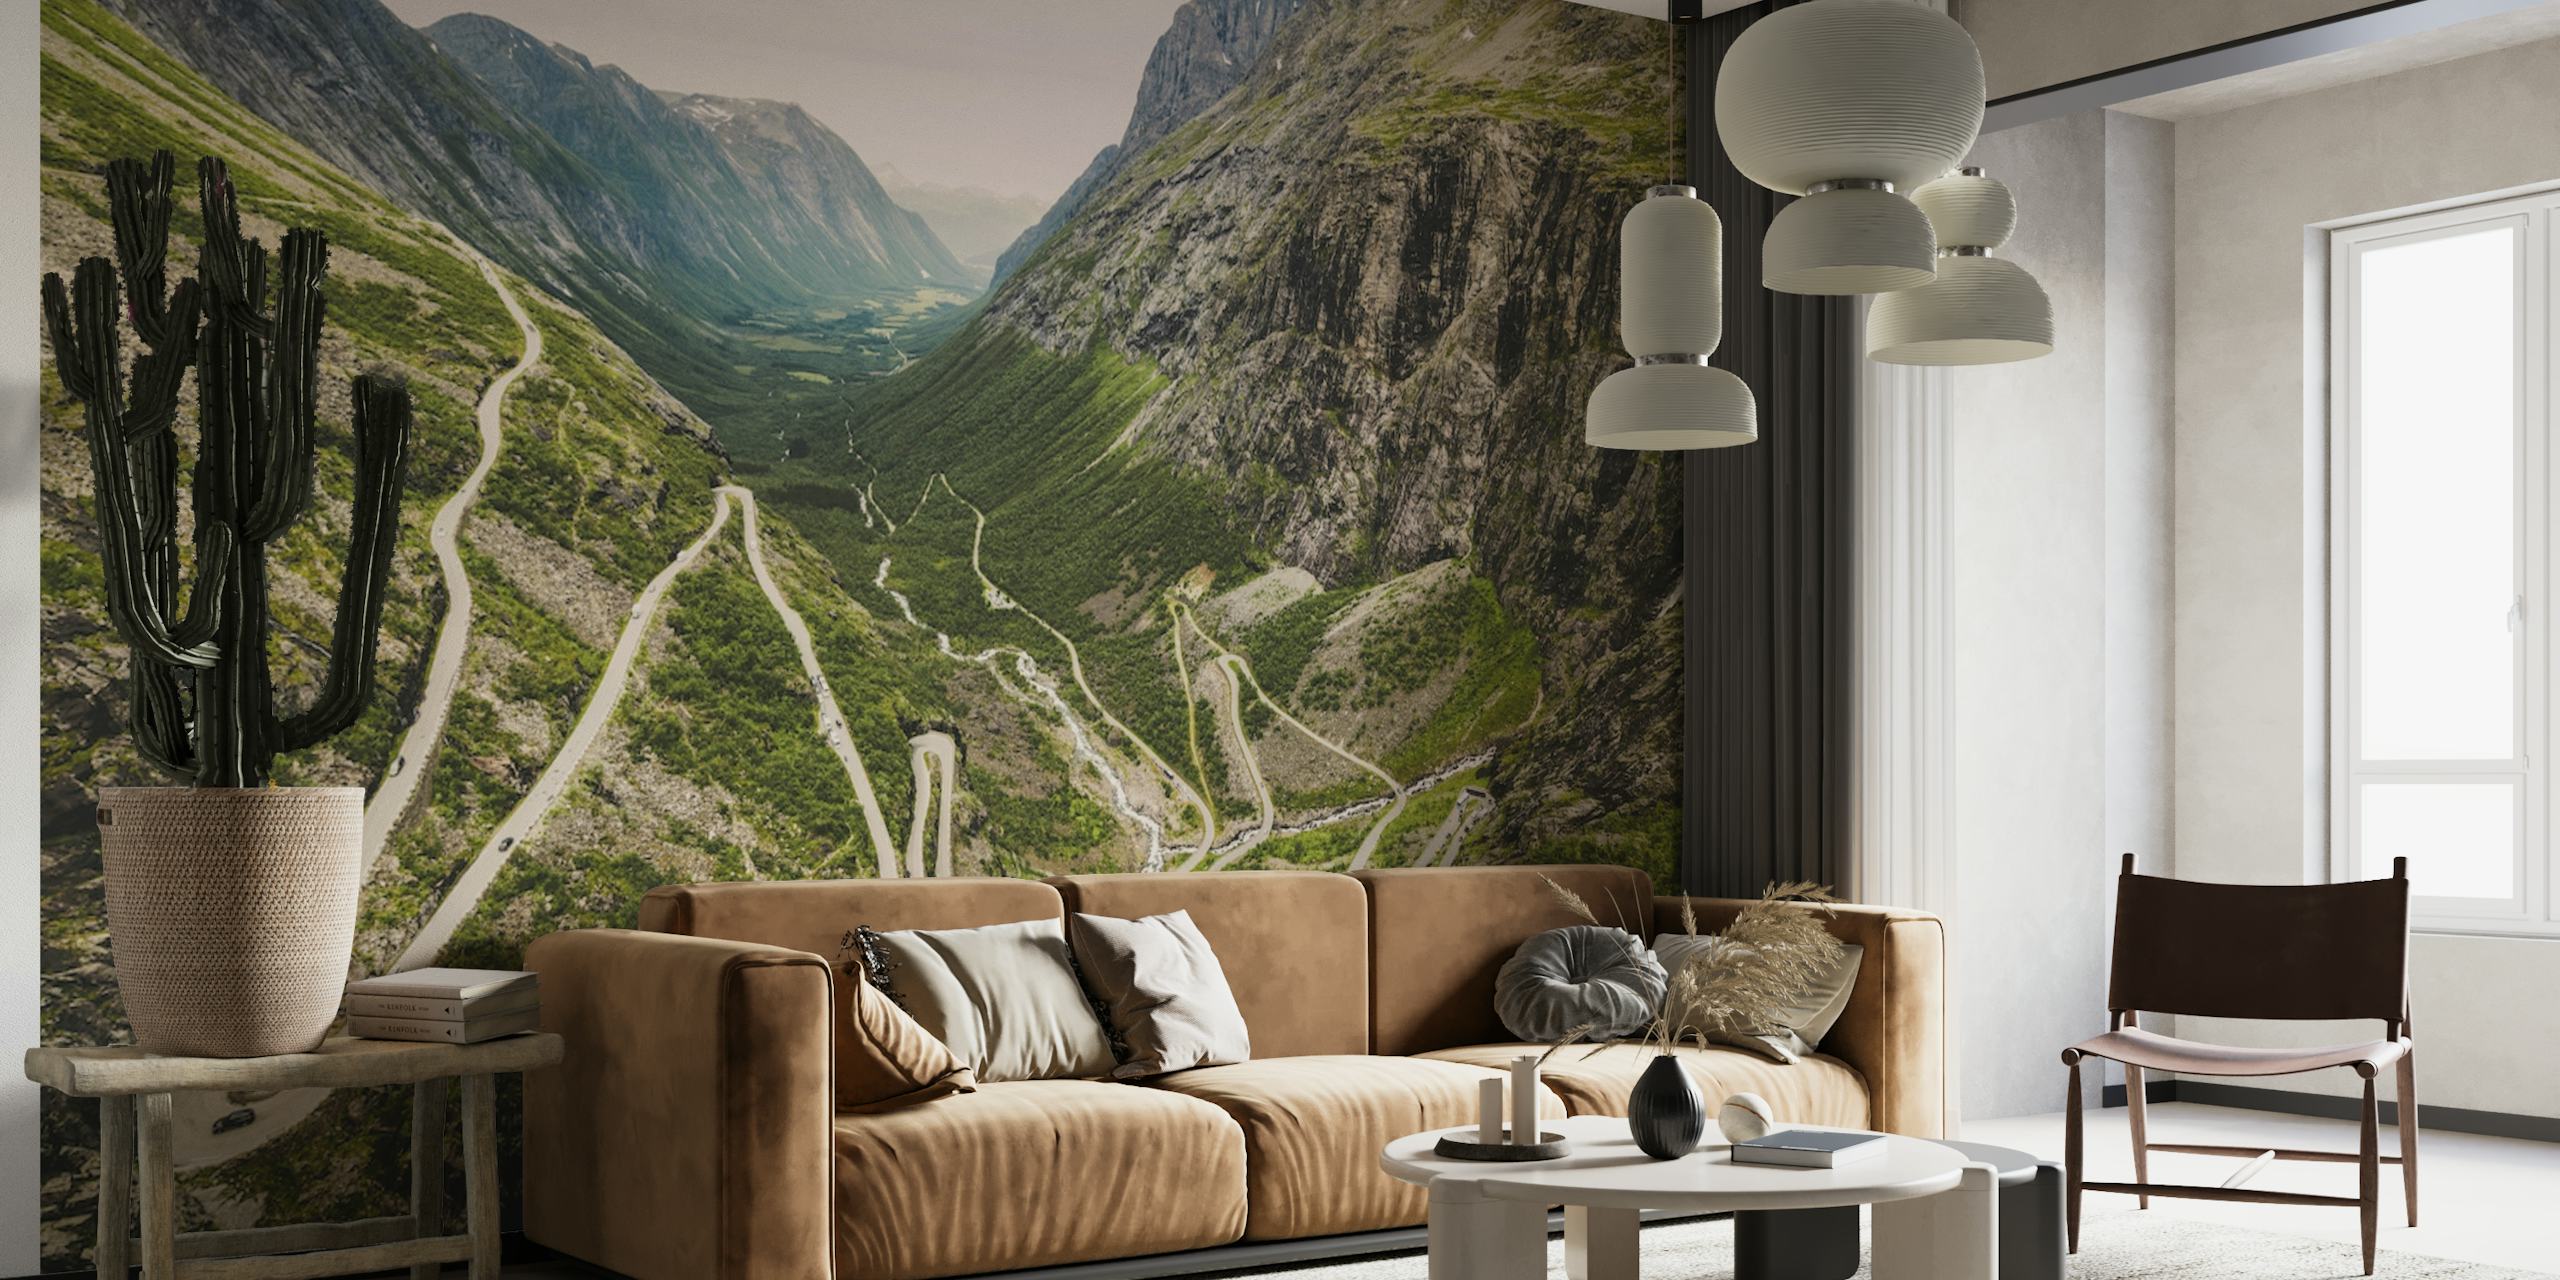 Trollstigen Norway wall mural showcasing winding roads and mountain scenery